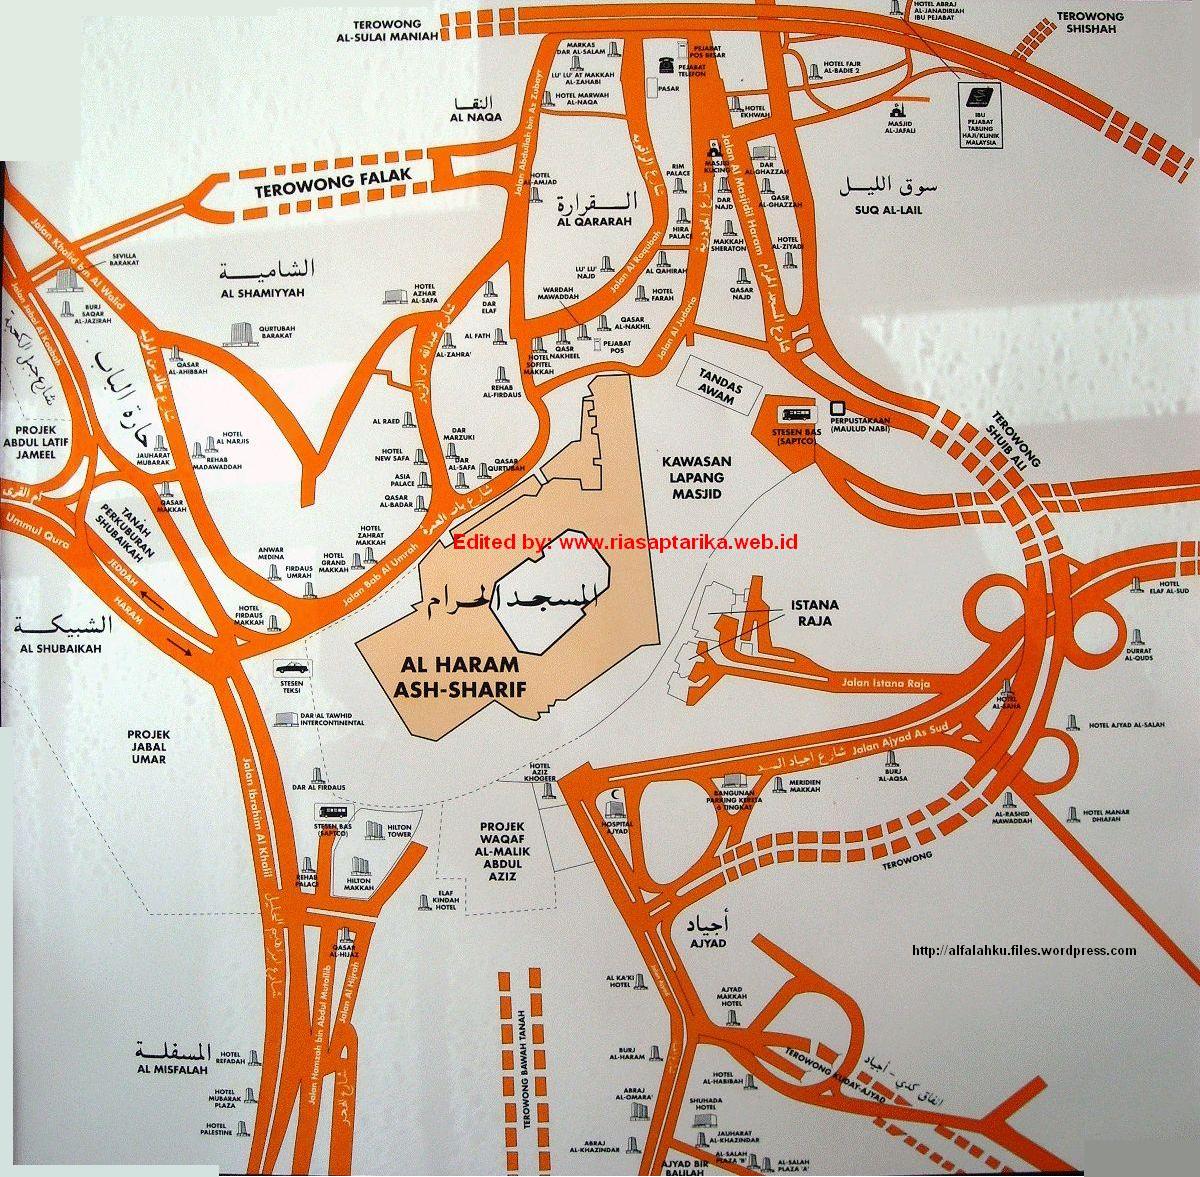 Makkah riyadh arabia madinah maps